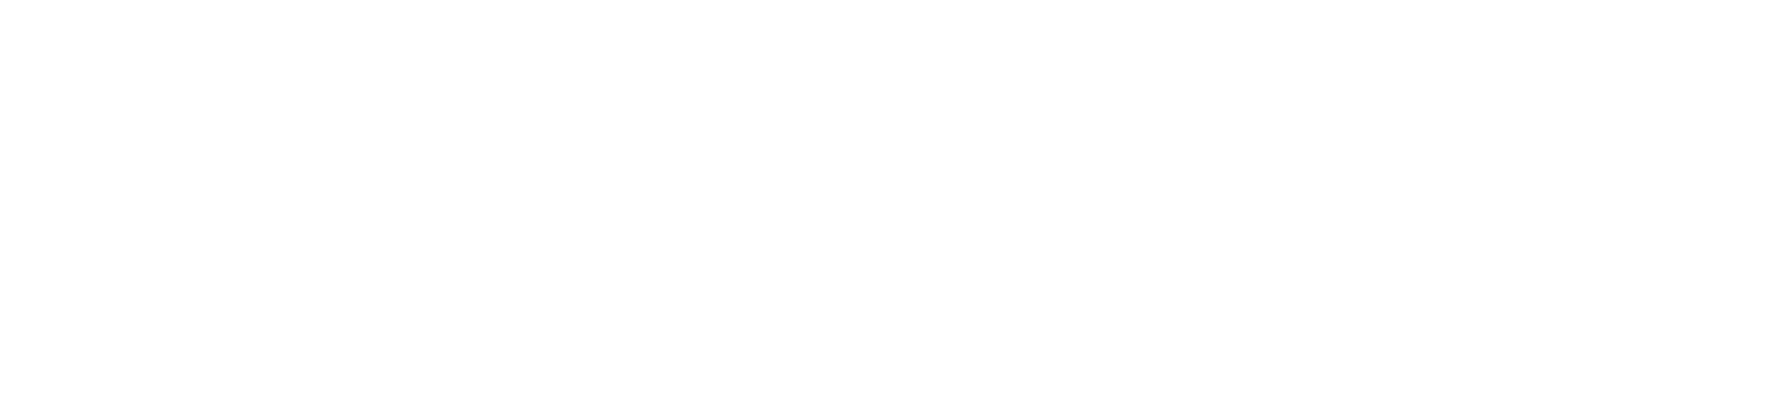 Vacuum Skin Packaging